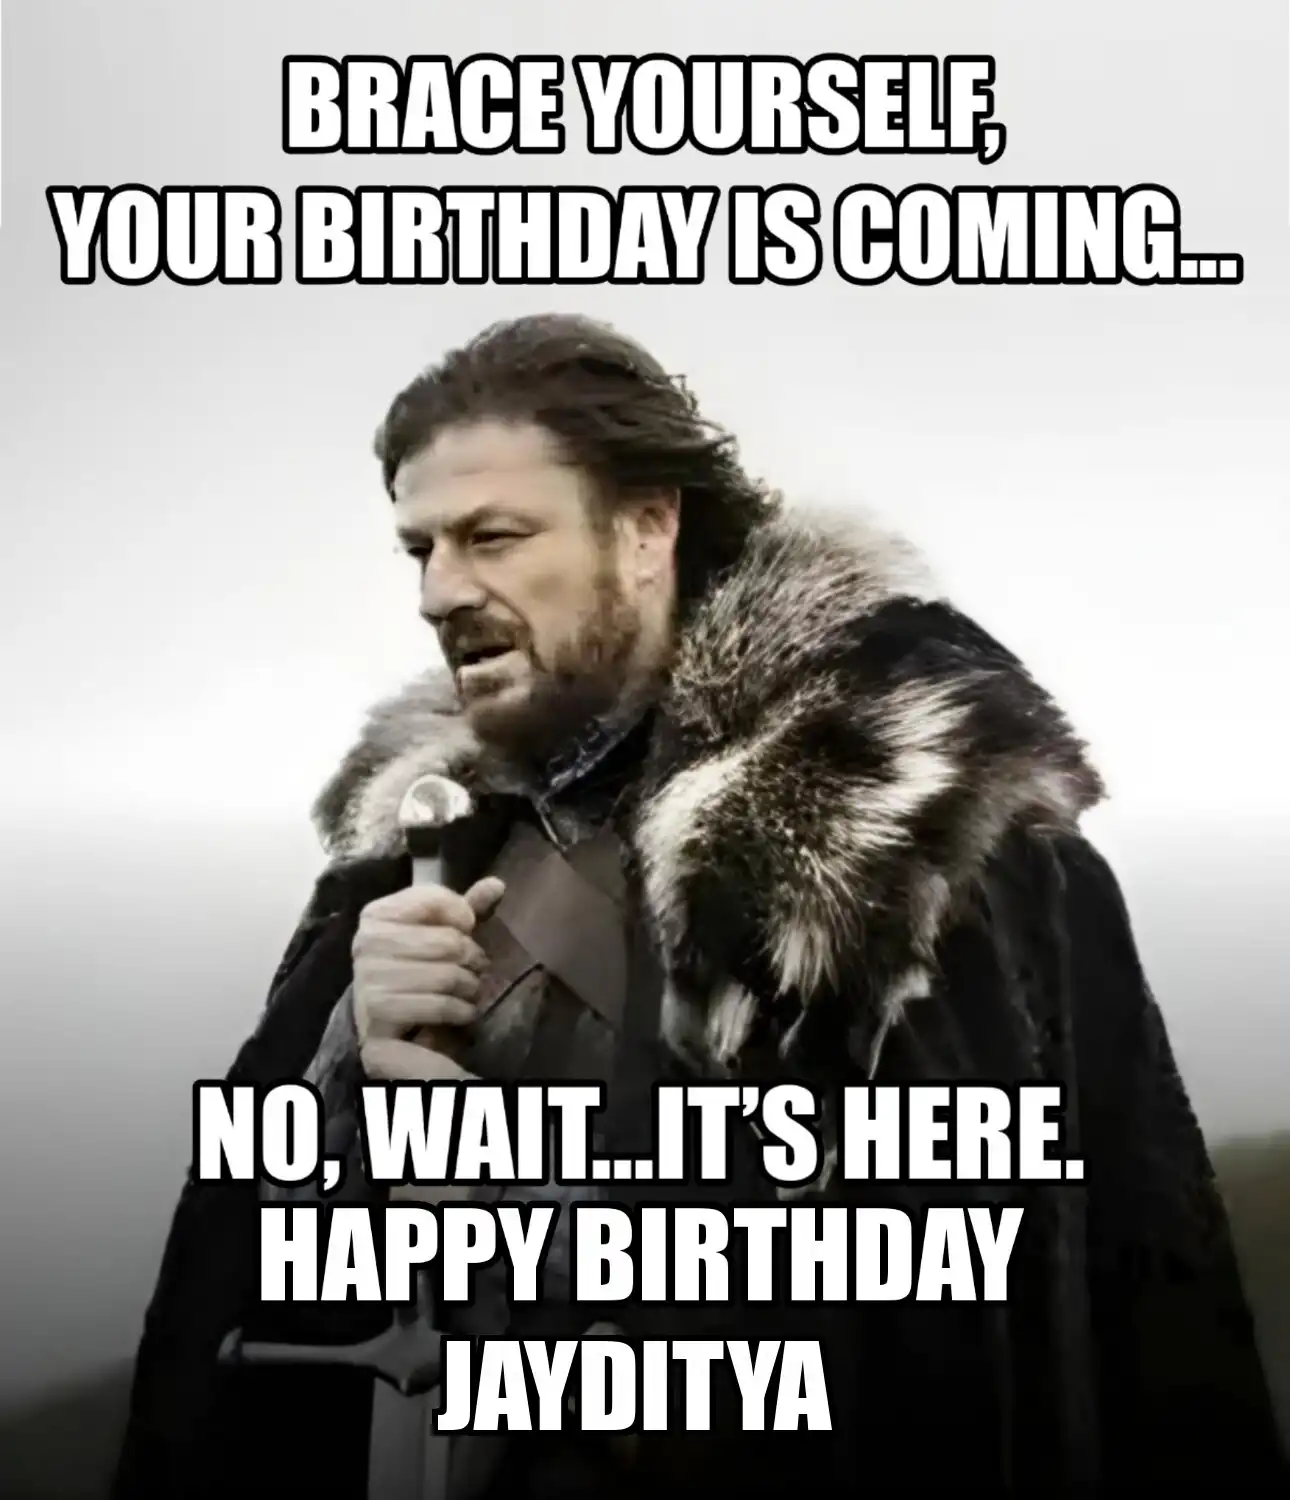 Happy Birthday Jayditya Brace Yourself Your Birthday Is Coming Meme